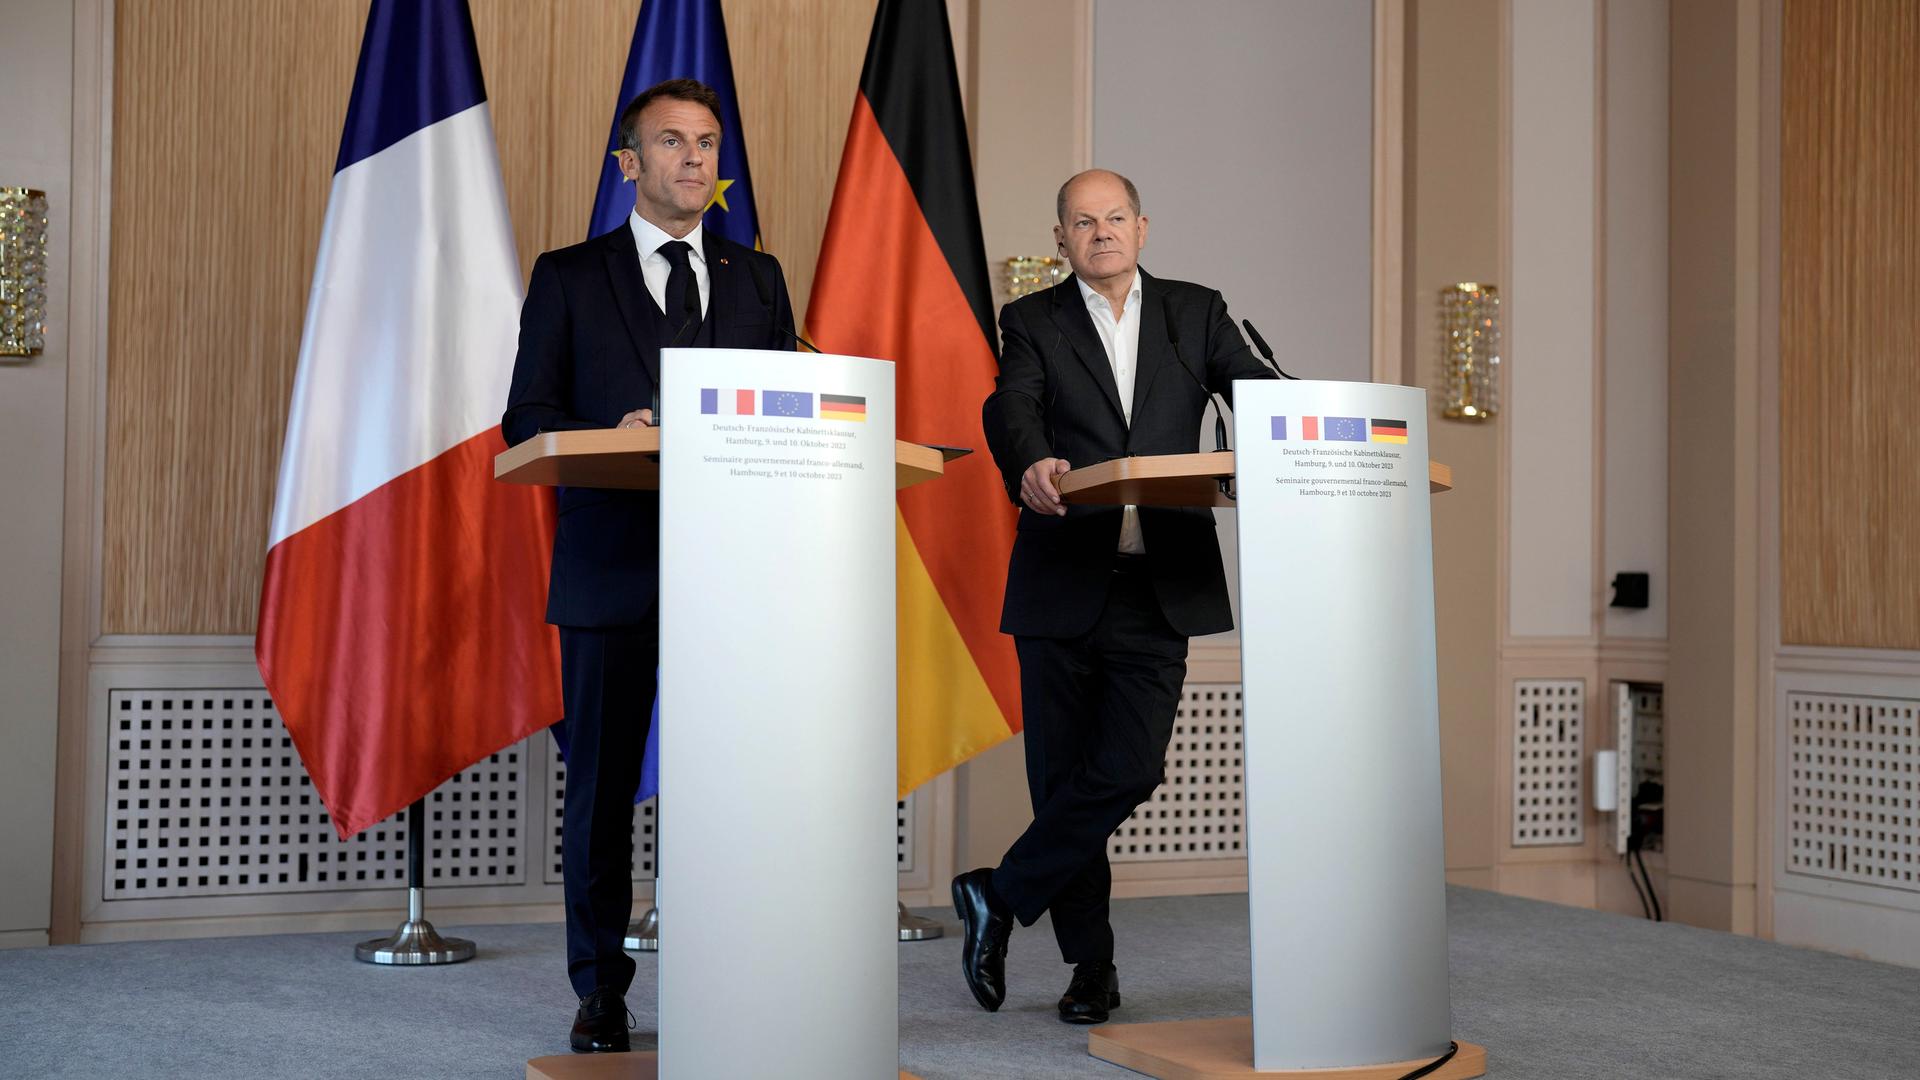 Frankreichs Präsident Macron und Bundeskanzler Scholz stehen hinter Rednerpulten und geben ein Pressestatement nach ihrer Klausur in Hamburg ab. Hinter ihnen die französische, die EU- und die deutsche Fahne.